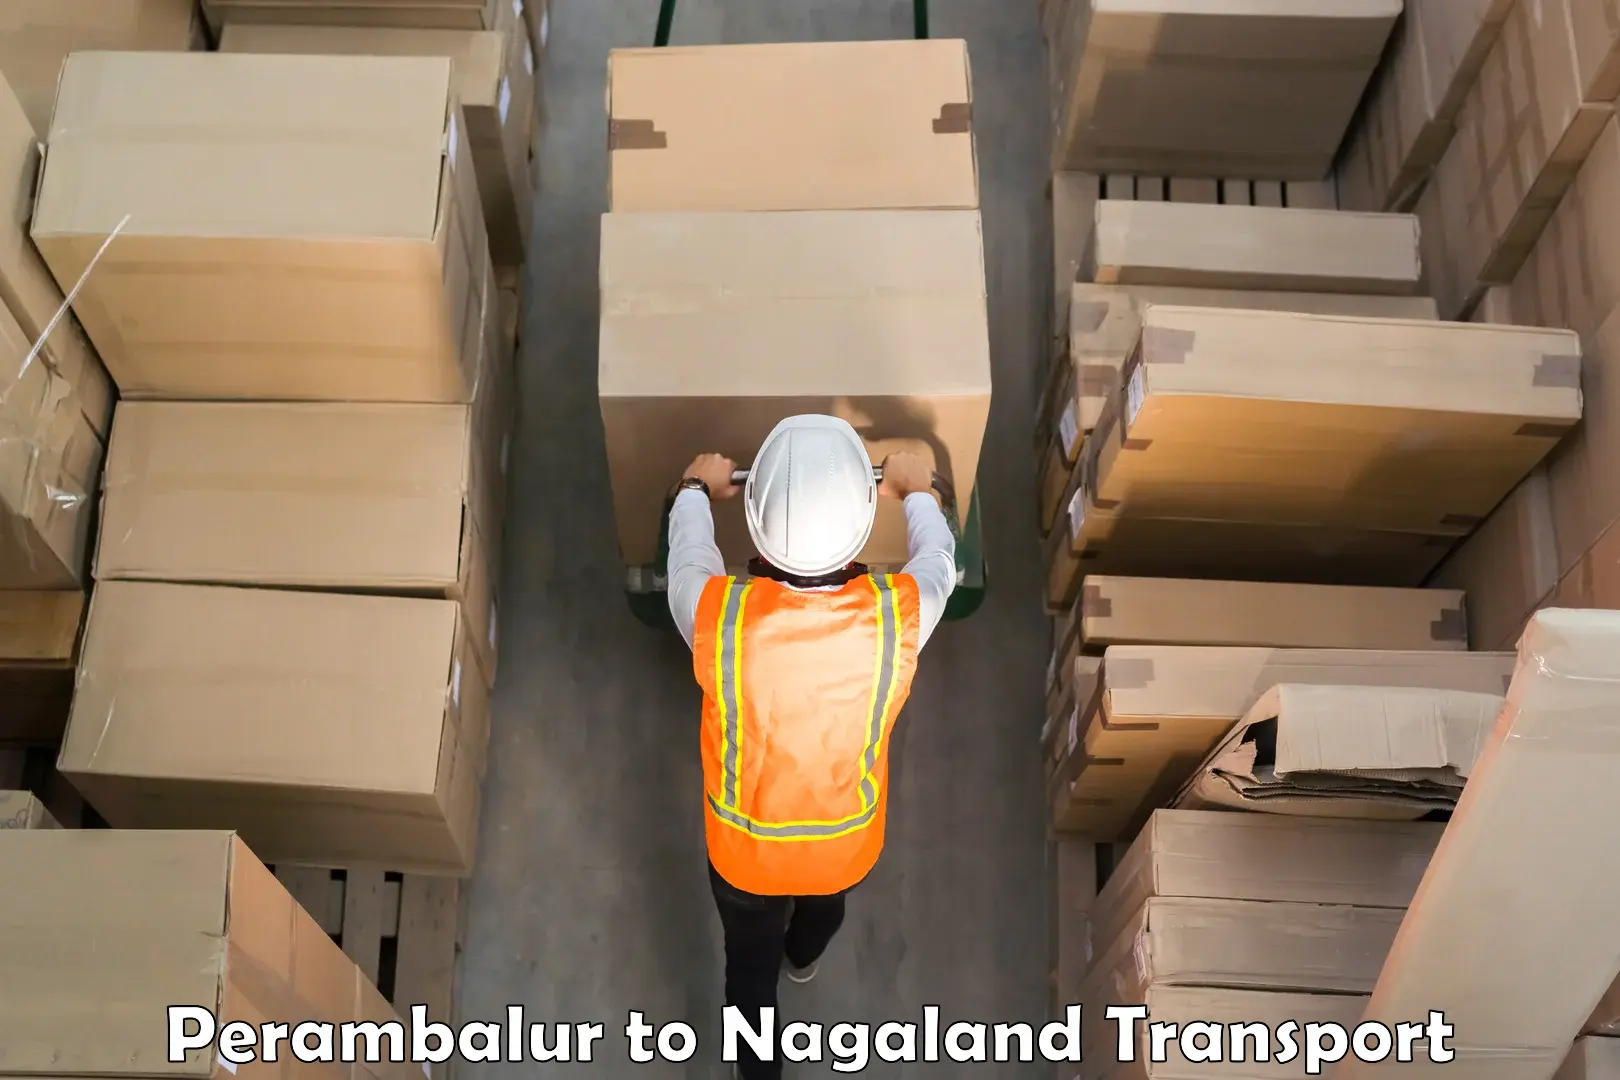 Container transport service Perambalur to Dimapur